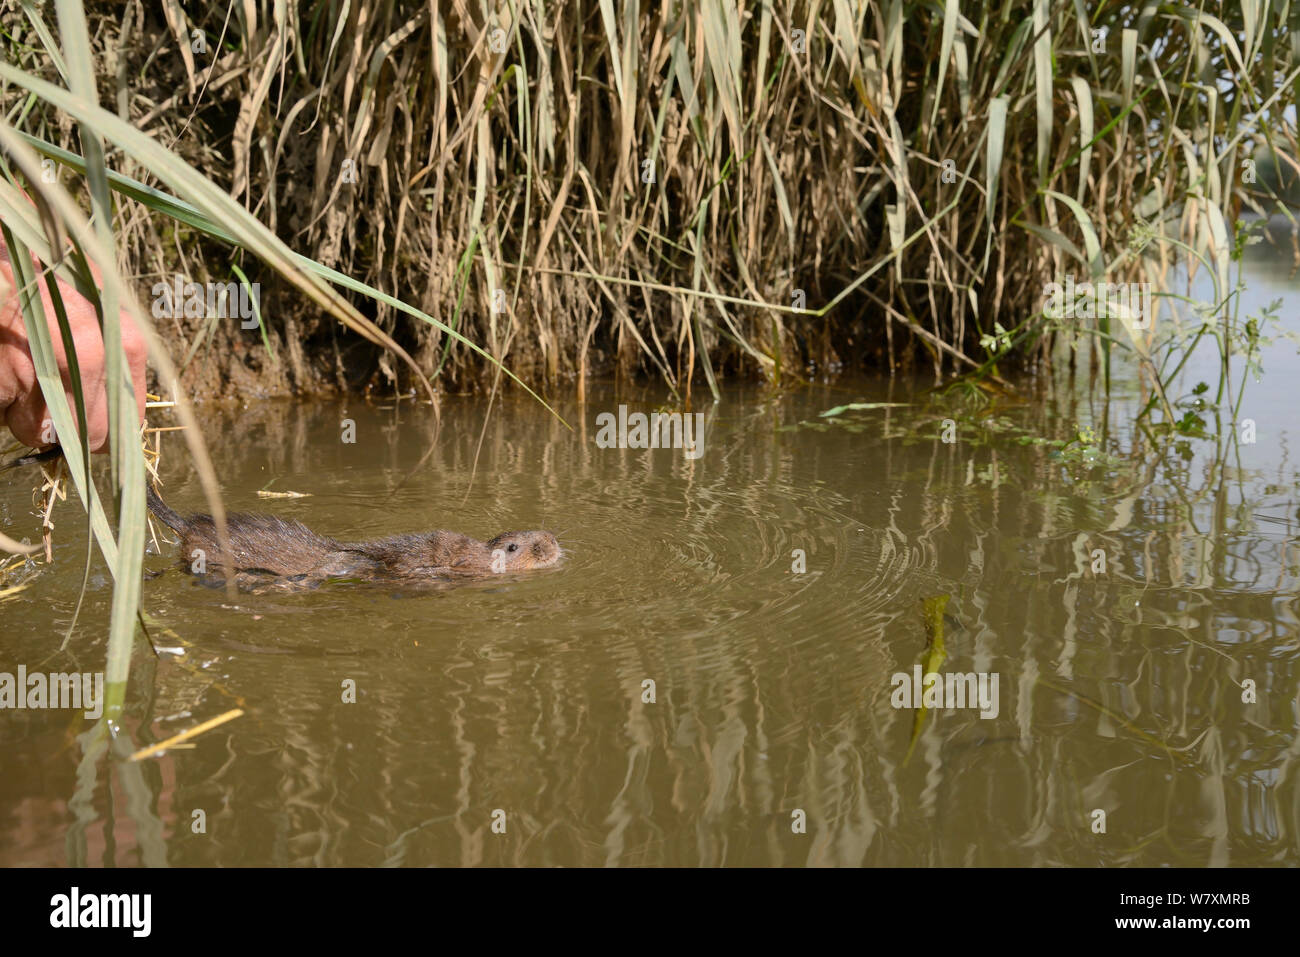 Le campagnol d'eau élevés en captivité (Arvicola amphibius) tenu par la queue avant de relâcher dans la rivière lors de la réintroduction, près de Bude, Cornwall, UK, juin. Parution du modèle. Banque D'Images